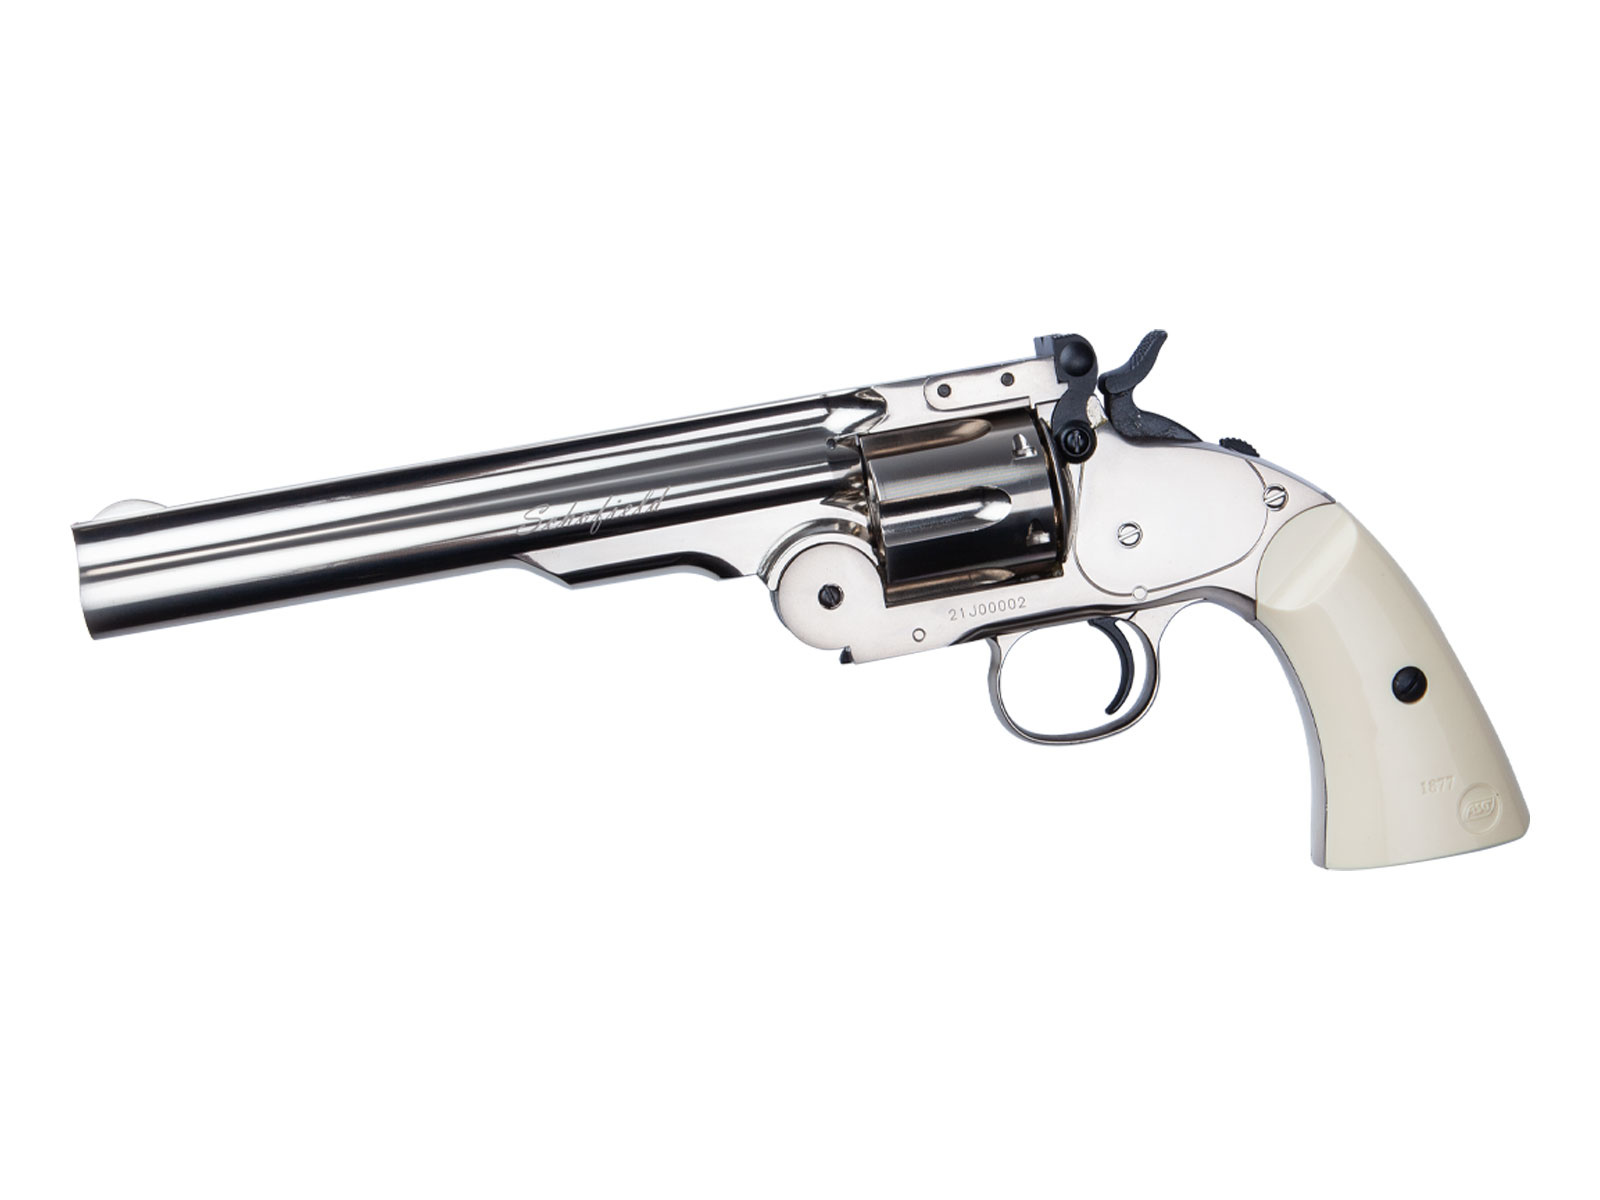 ASG Revolver Schofield Co2 da 6 pollici 2,0 joule - argento